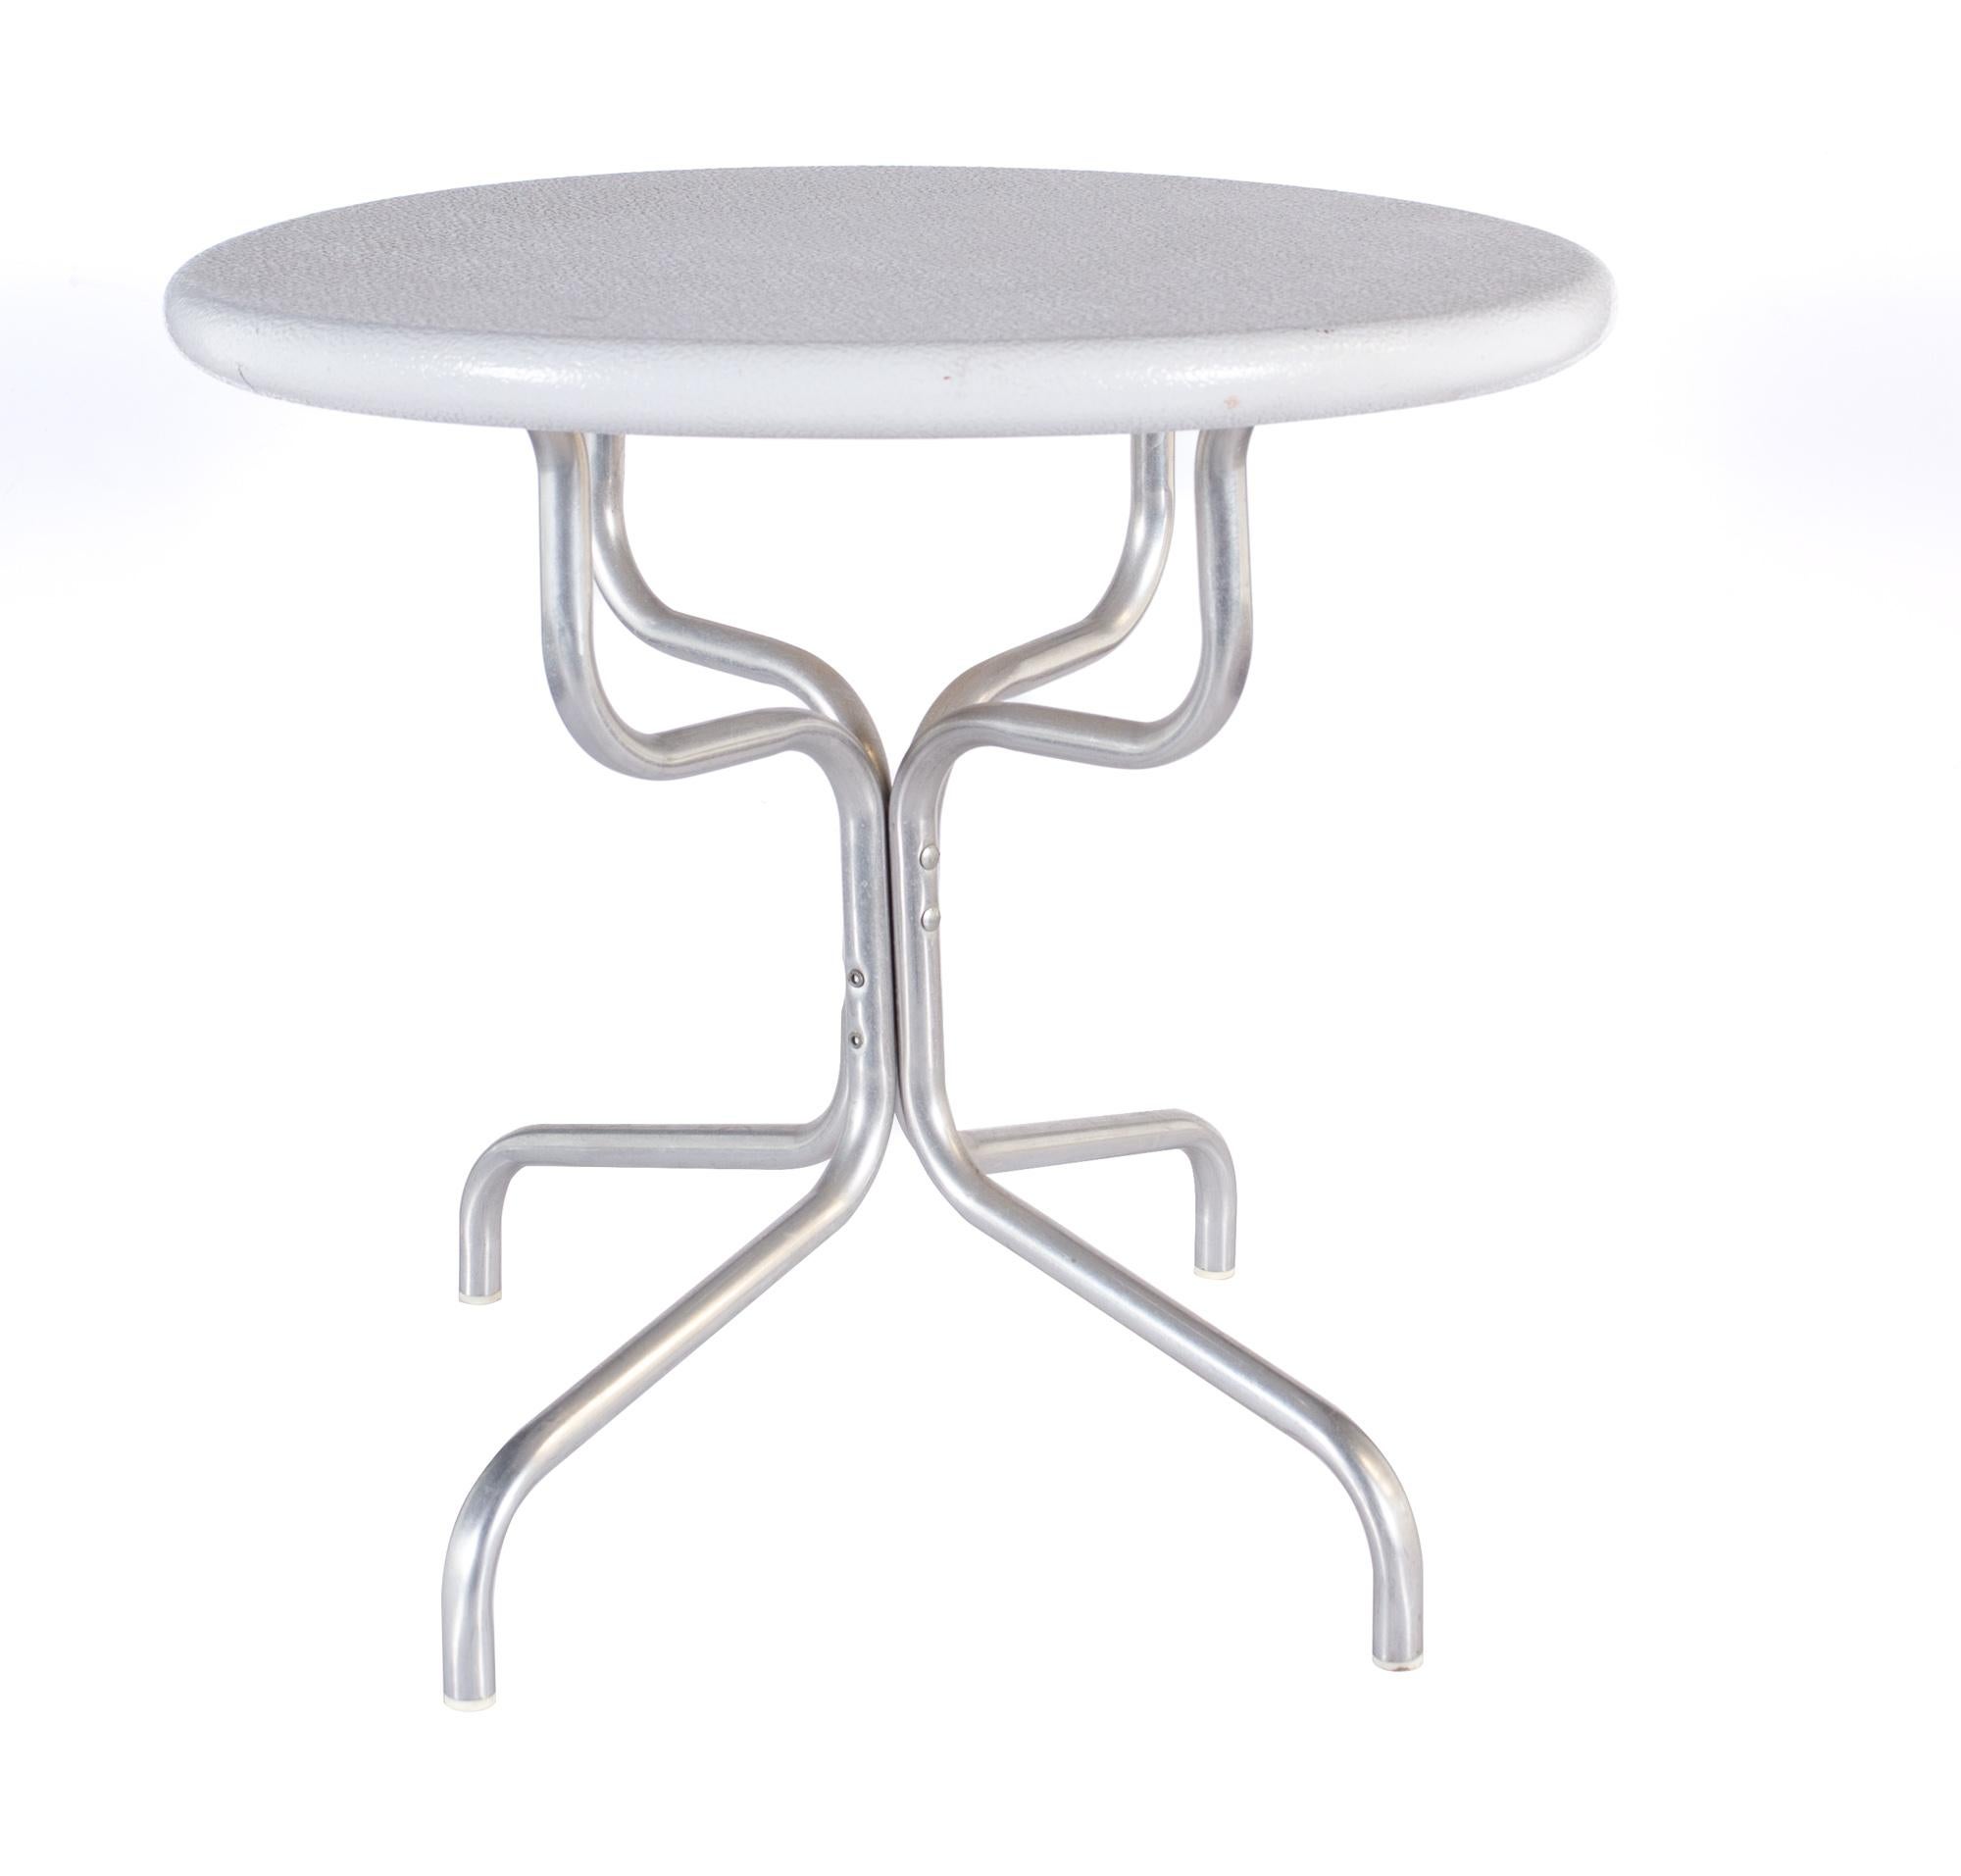 Table d'appoint en aluminium peint en blanc du milieu du siècle

La table mesure : largeur 22 x profondeur 22 x hauteur 20 pouces, avec un espace libre pour les chaises de 18.8 pouces

Tous les meubles peuvent être obtenus dans ce que nous